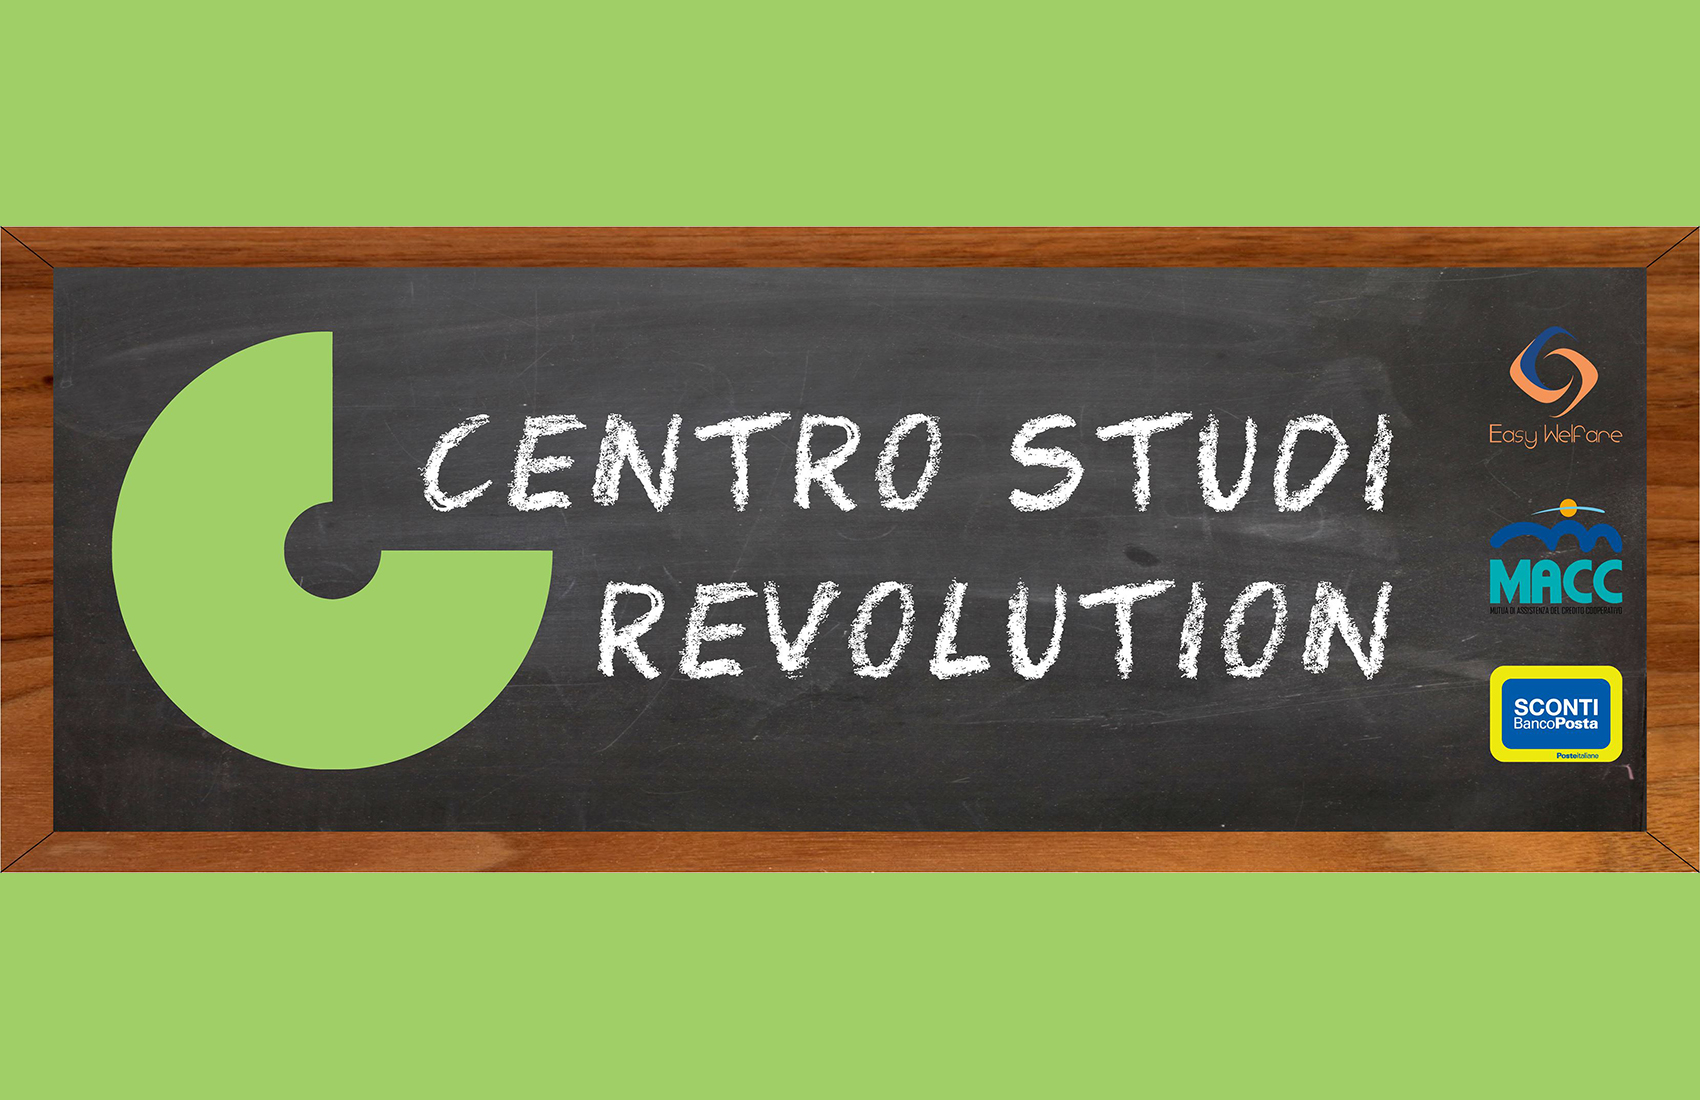 Centro Studi Revolution Fiumicello  - Fiumicello Villa Vicentina